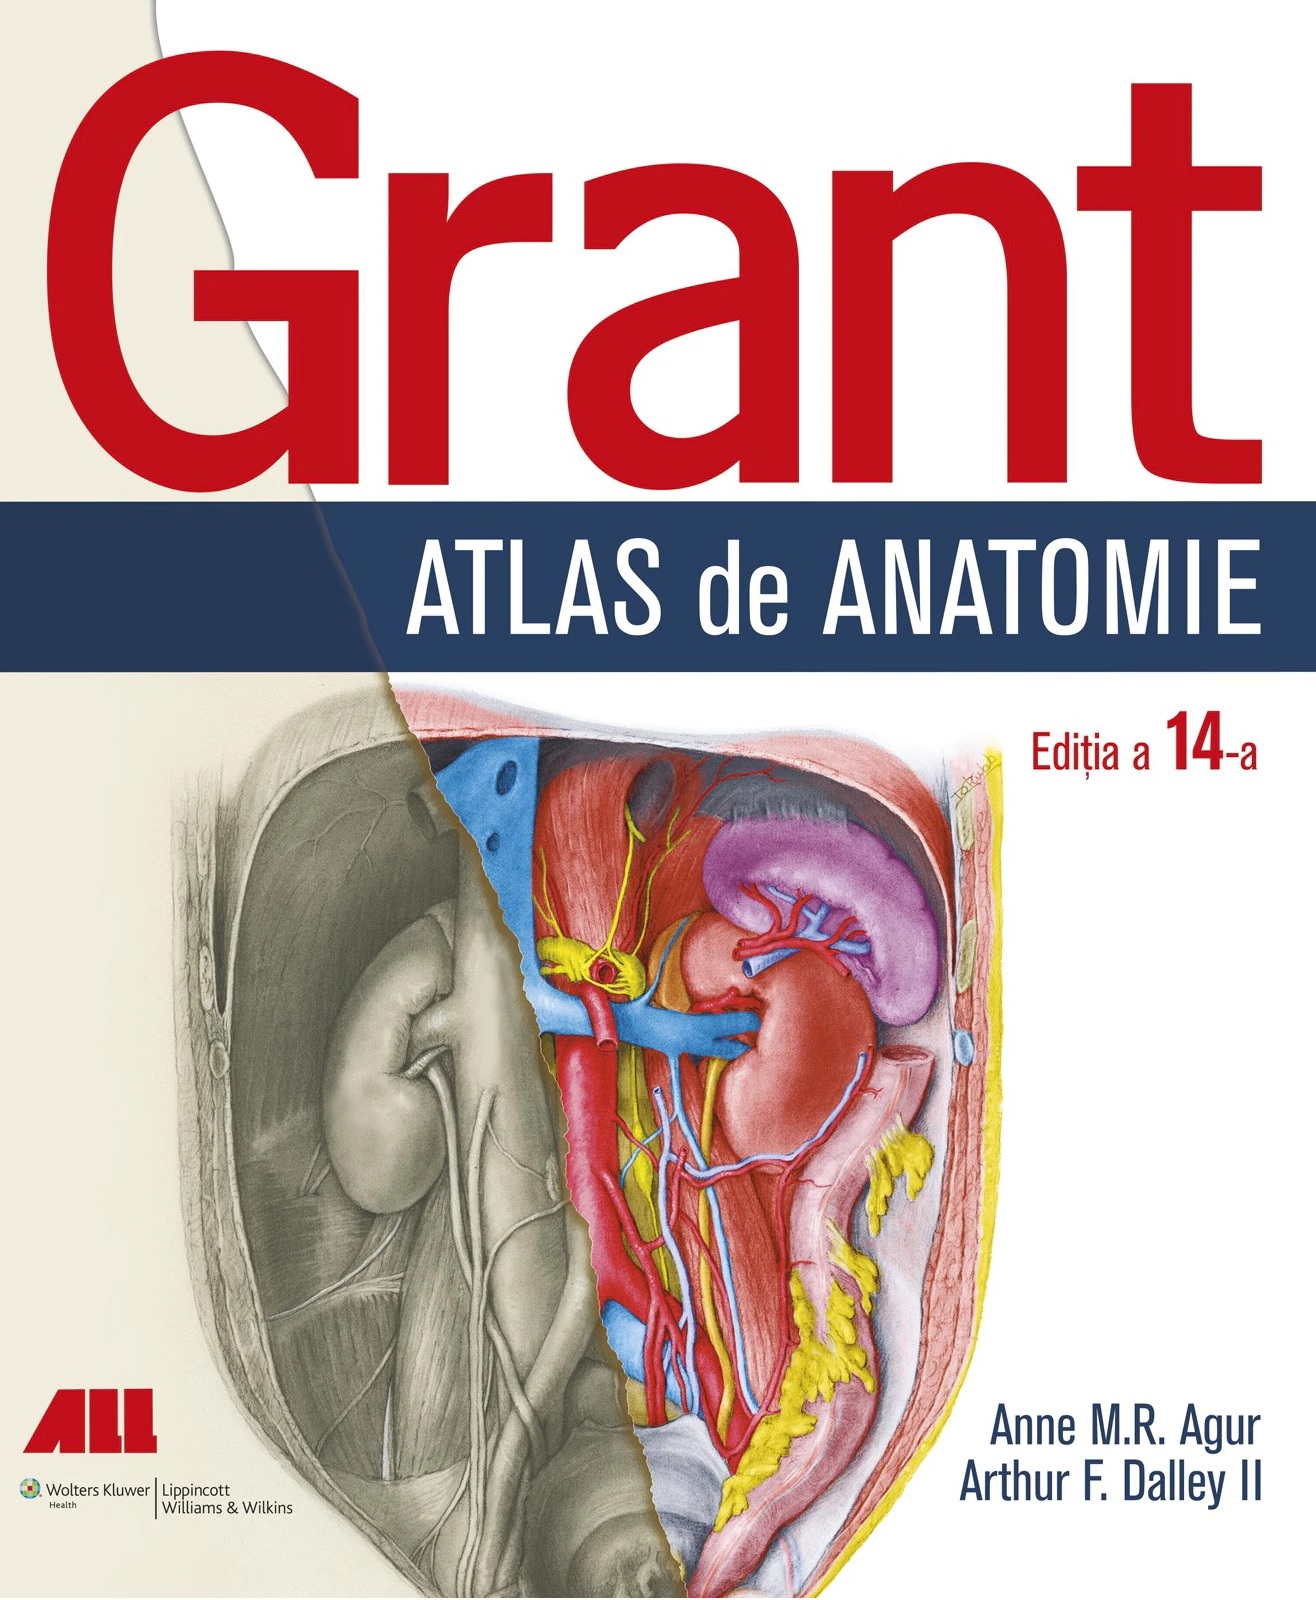 Coperta cărții: Grant - Atlas de anatomie - lonnieyoungblood.com